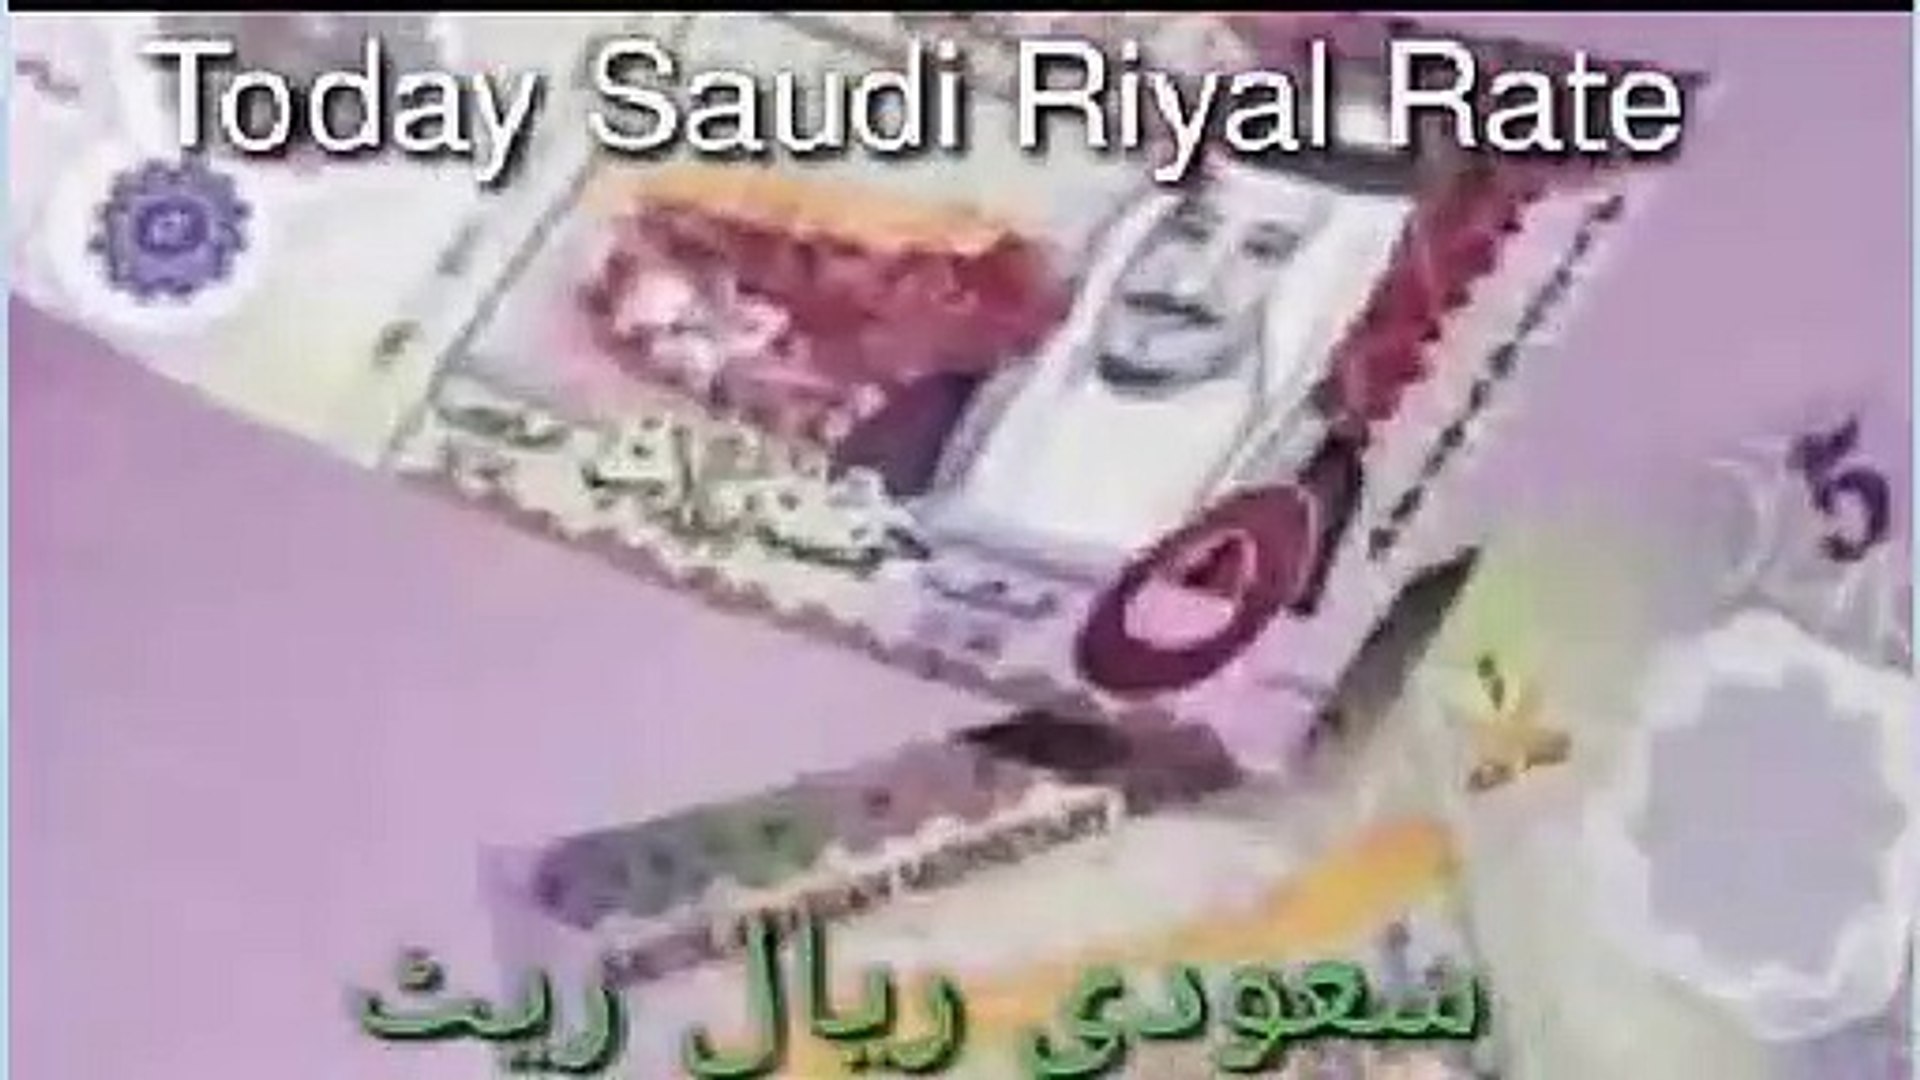 Saudi riyal to nepali rupee